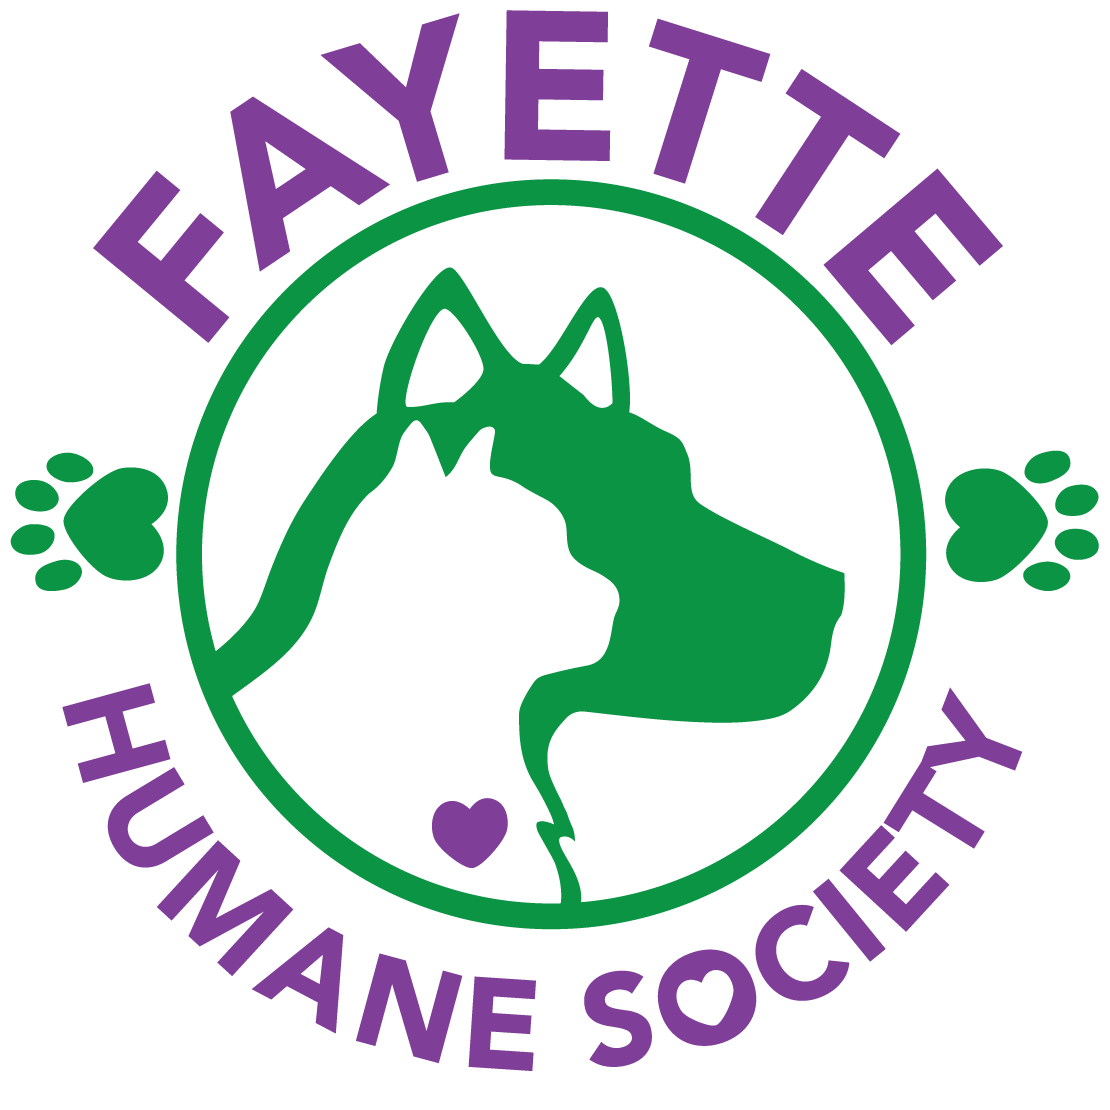 Fayette Humane Society